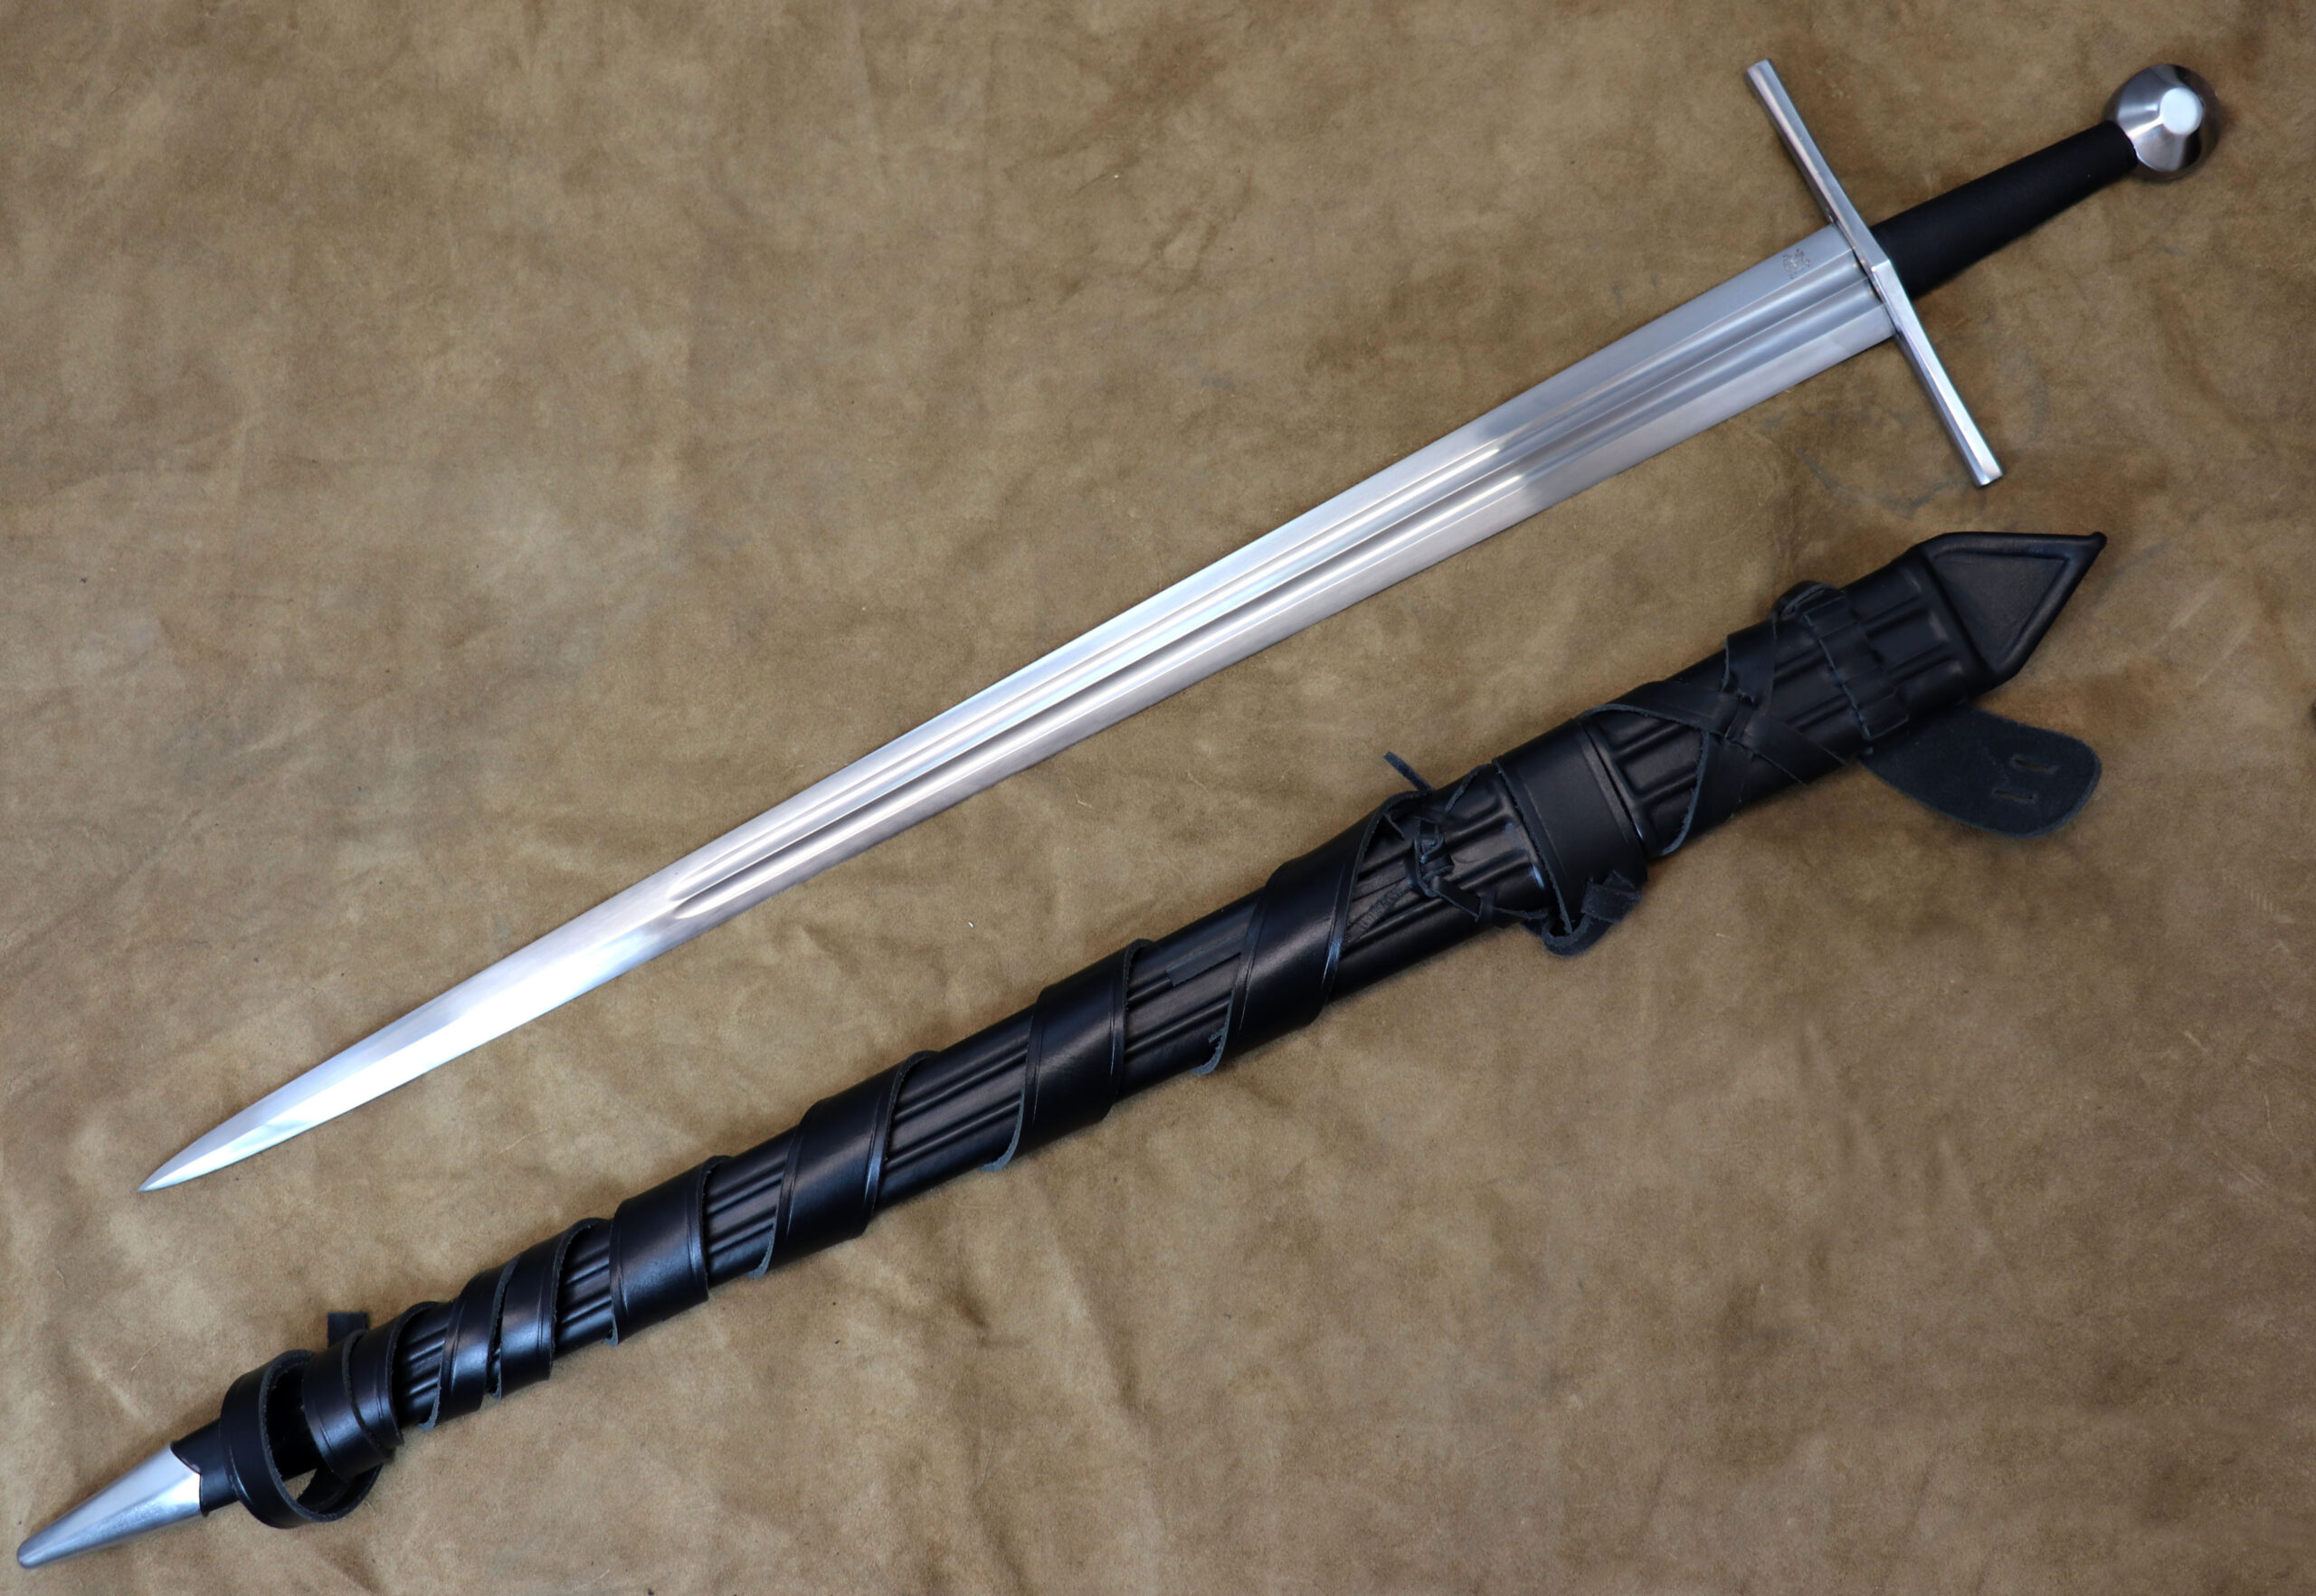 The Hastings Sword